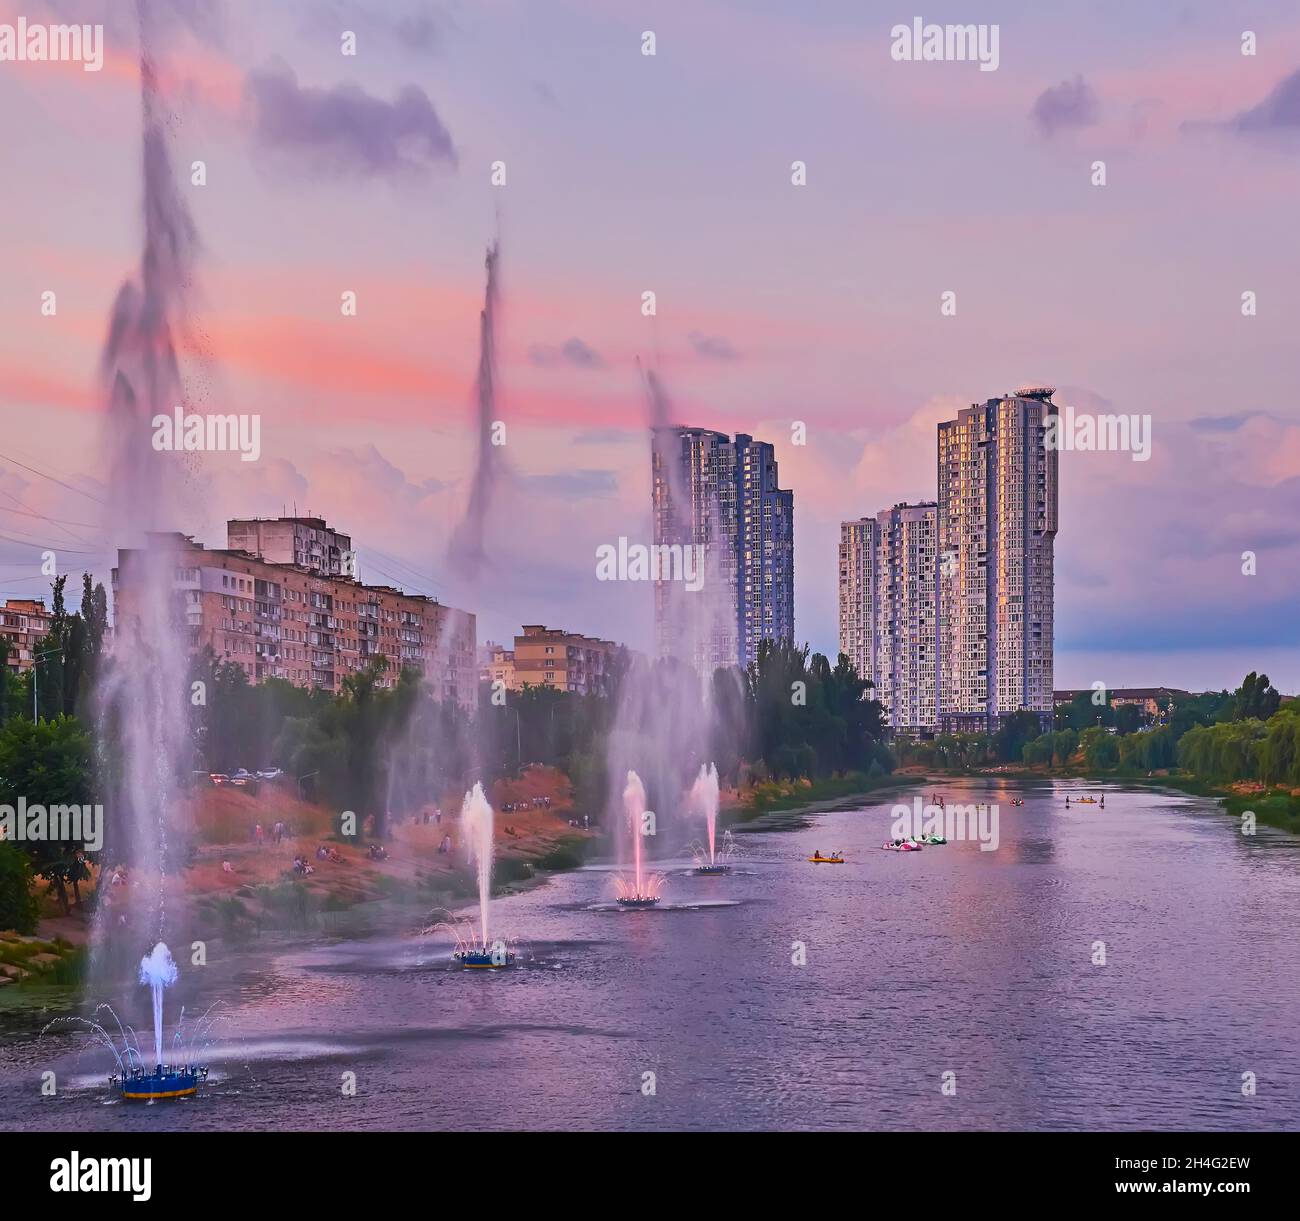 Le fontane di Rusanivsky si trovano sul canale di Rusanivsky, nel vecchio quartiere vivente di Kyiv, Ucraina Foto Stock